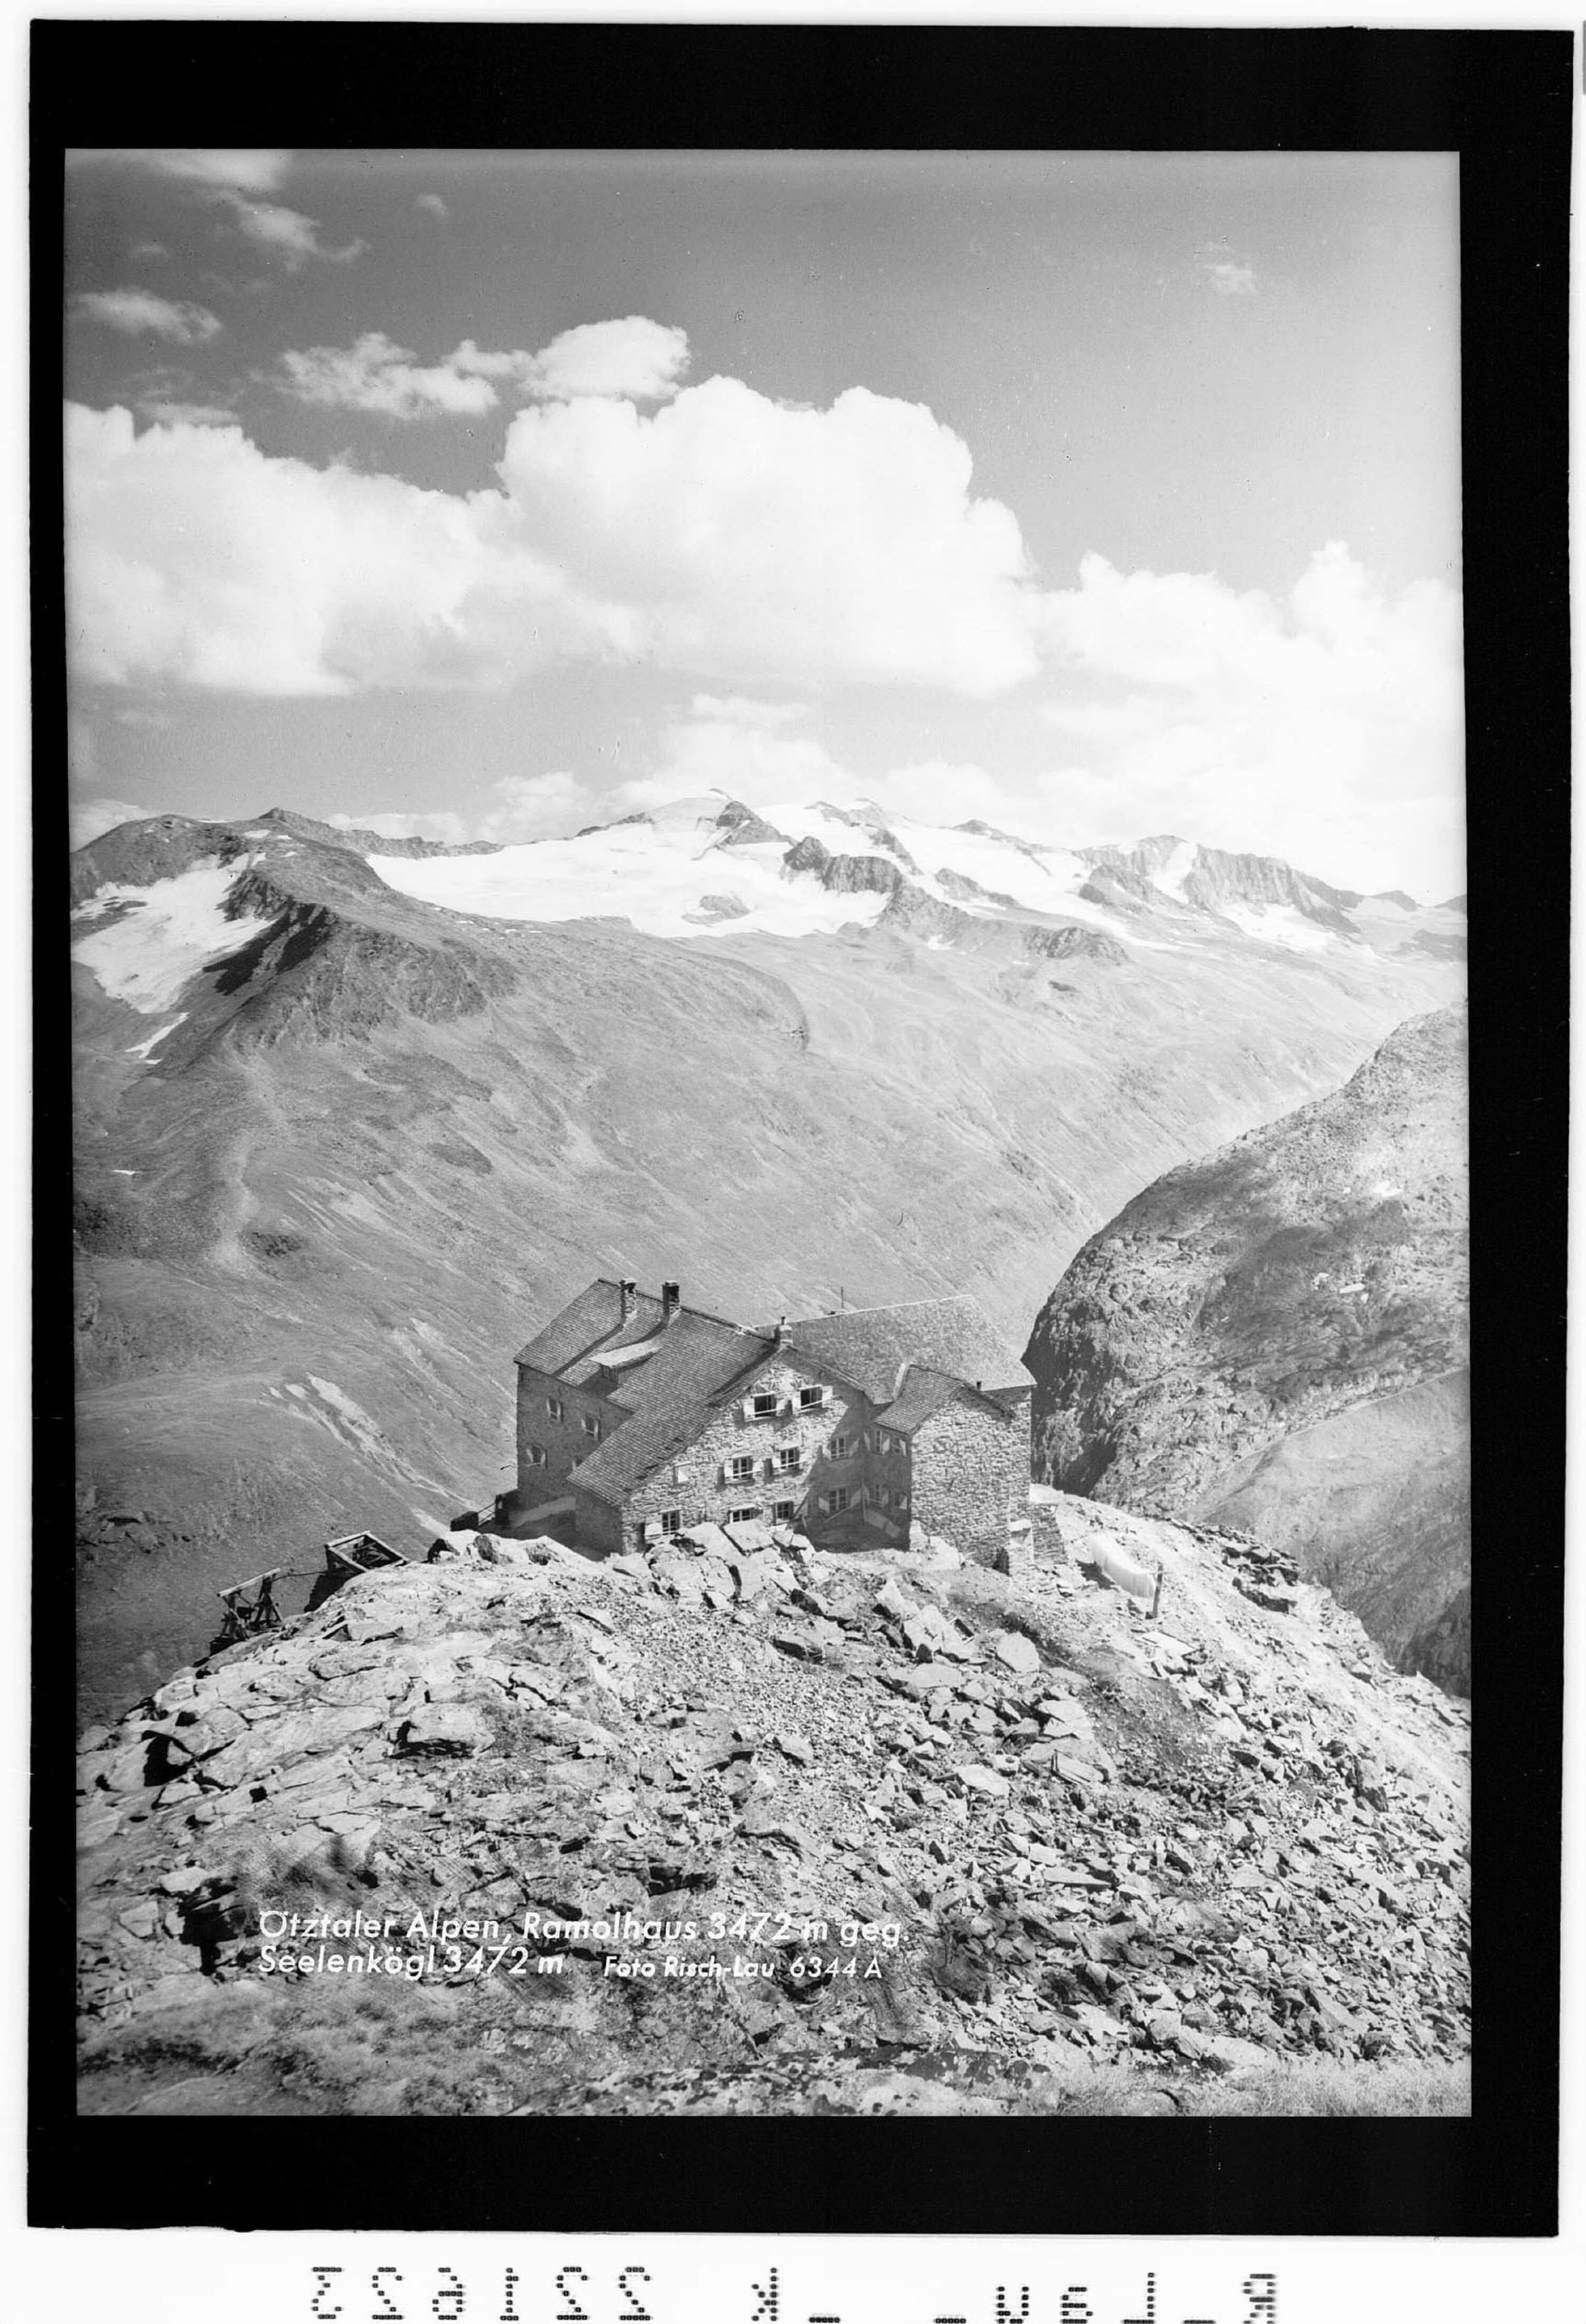 Ötztaler Alpen / Ramolhaus 3472 m gegen Seelenkögl 3472 m></div>


    <hr>
    <div class=